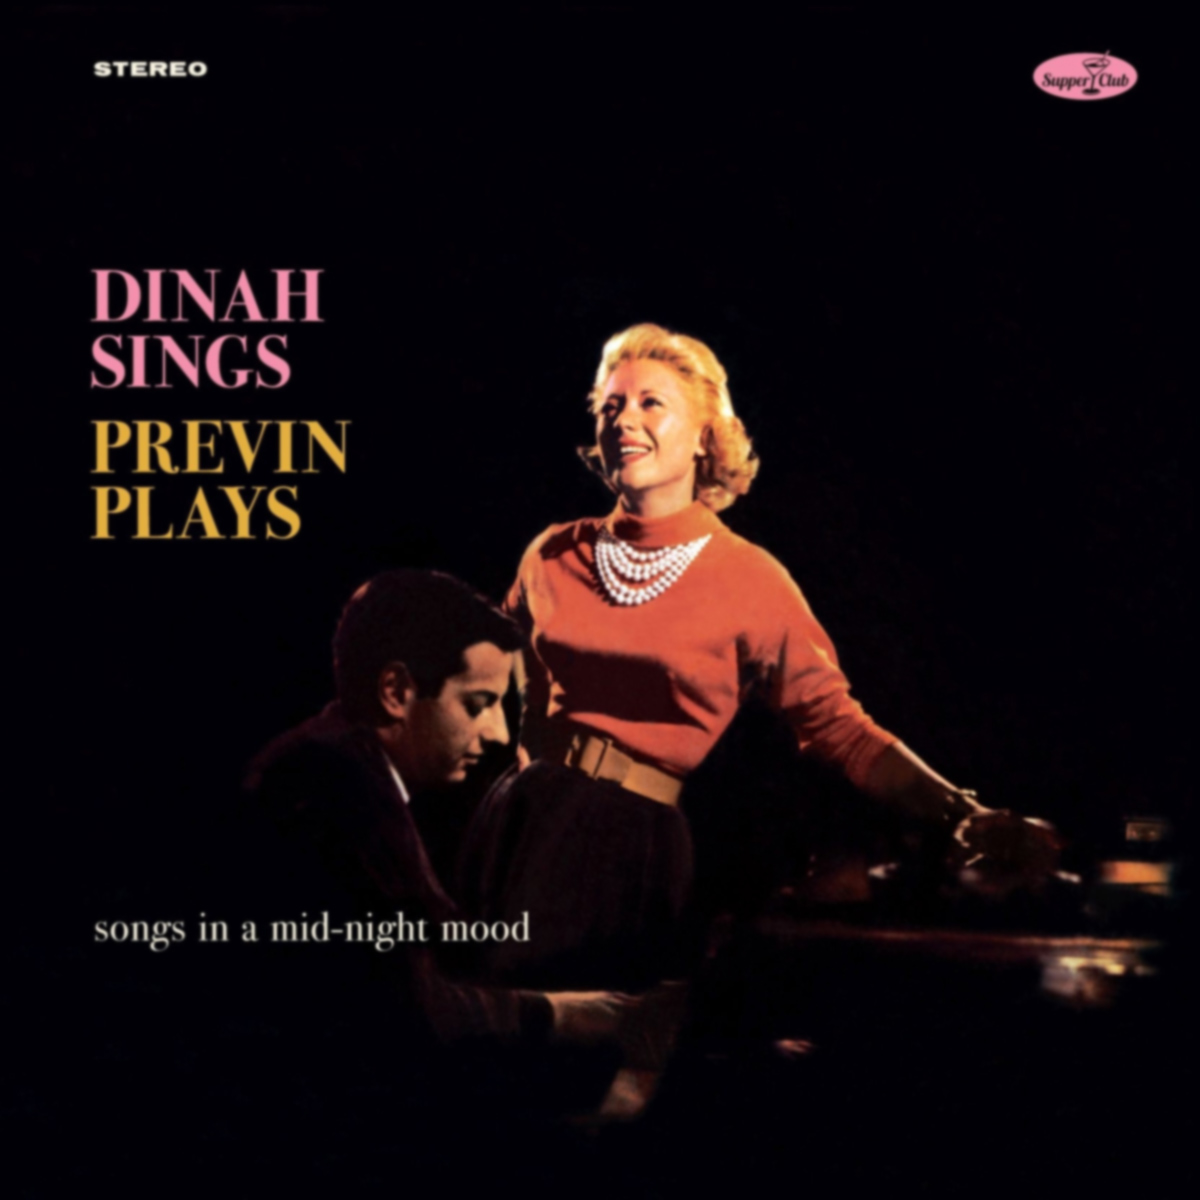 Dinah Sings - Previn Plays